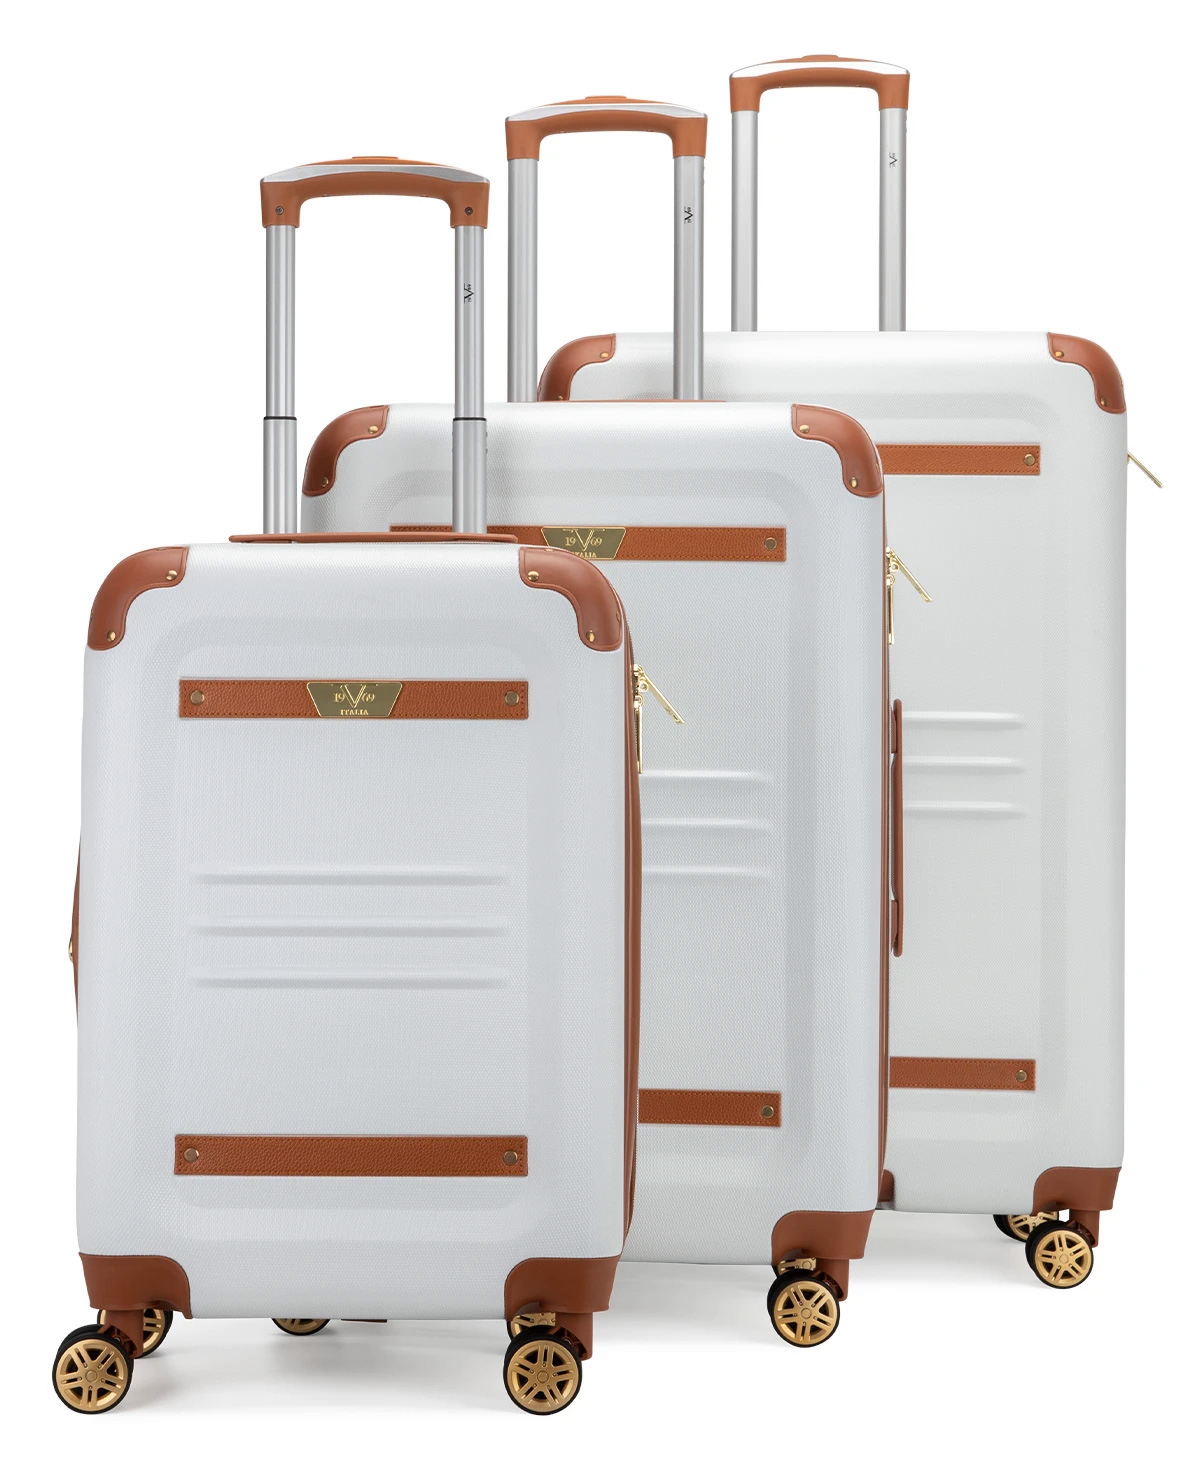 V19.69 Italia Vintage-like 3 Piece Expandable Retro Luggage Set In White